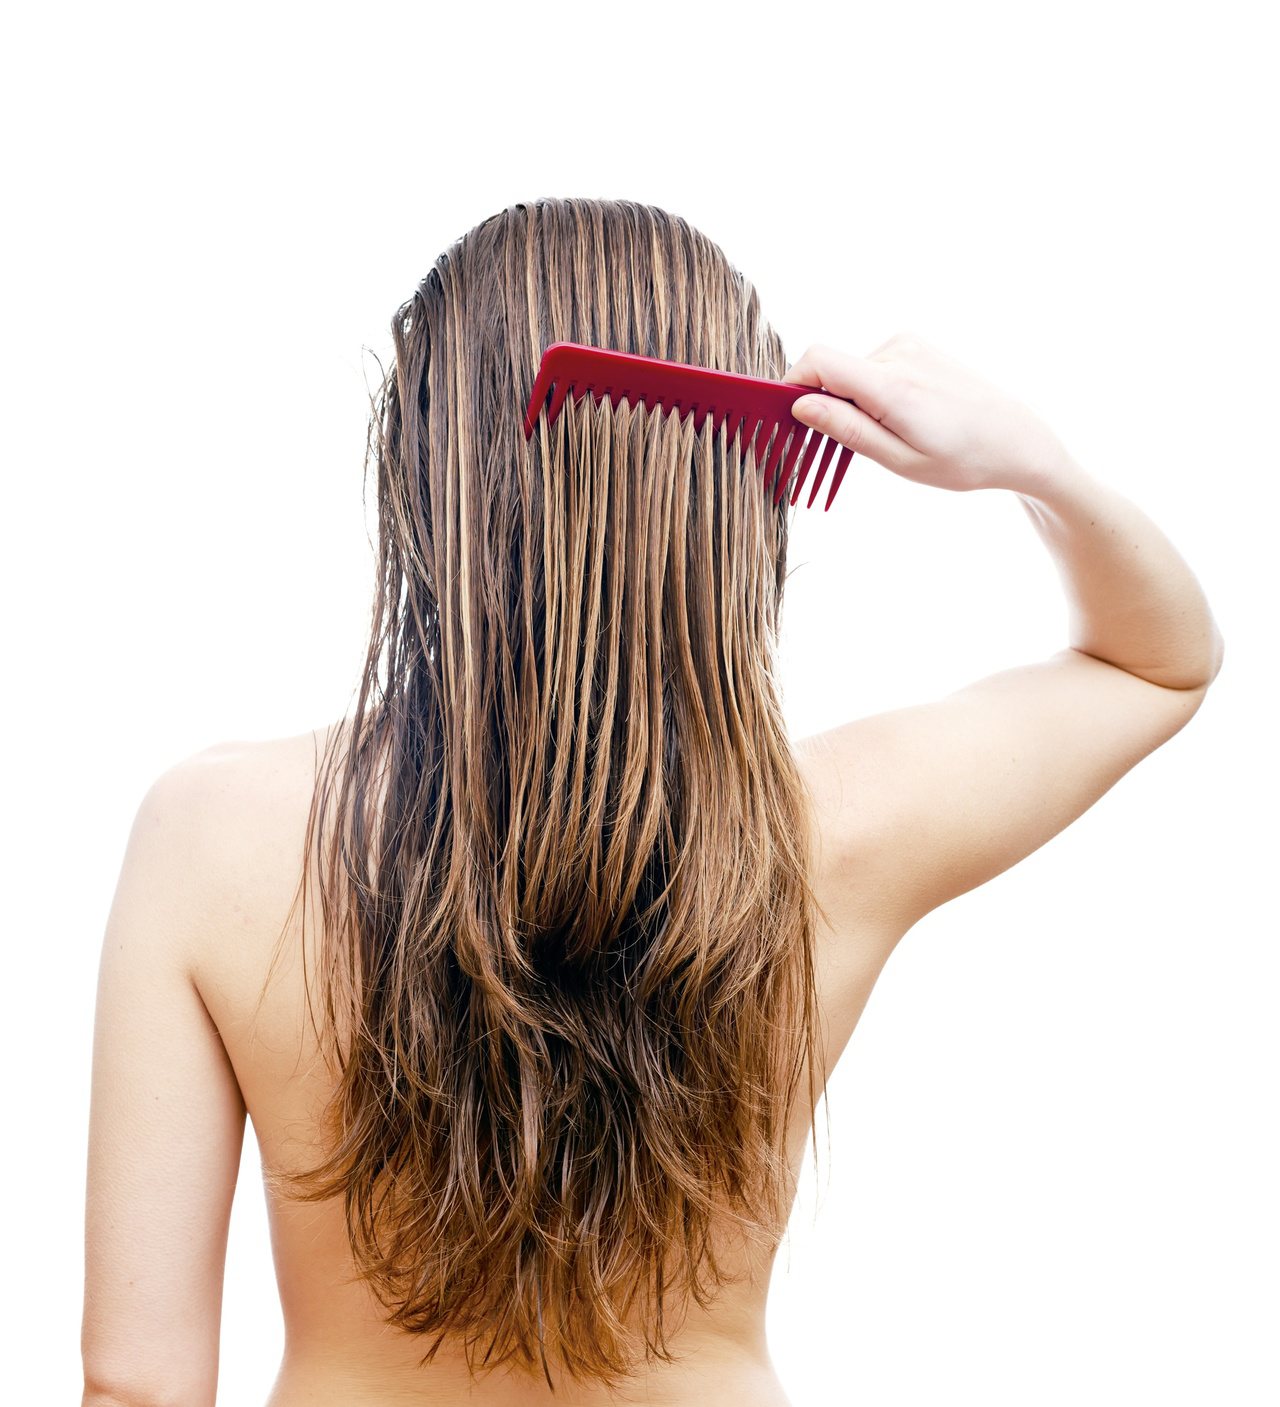 洗髮精的成分到底對身體有沒有害？和桐化學總經理許榮輝表示，雖然研究顯示長期大量接觸洗髮精中的「二惡烷」，恐有致癌之虞，但一般正常使用洗髮精大可不必擔心。報系檔案照片